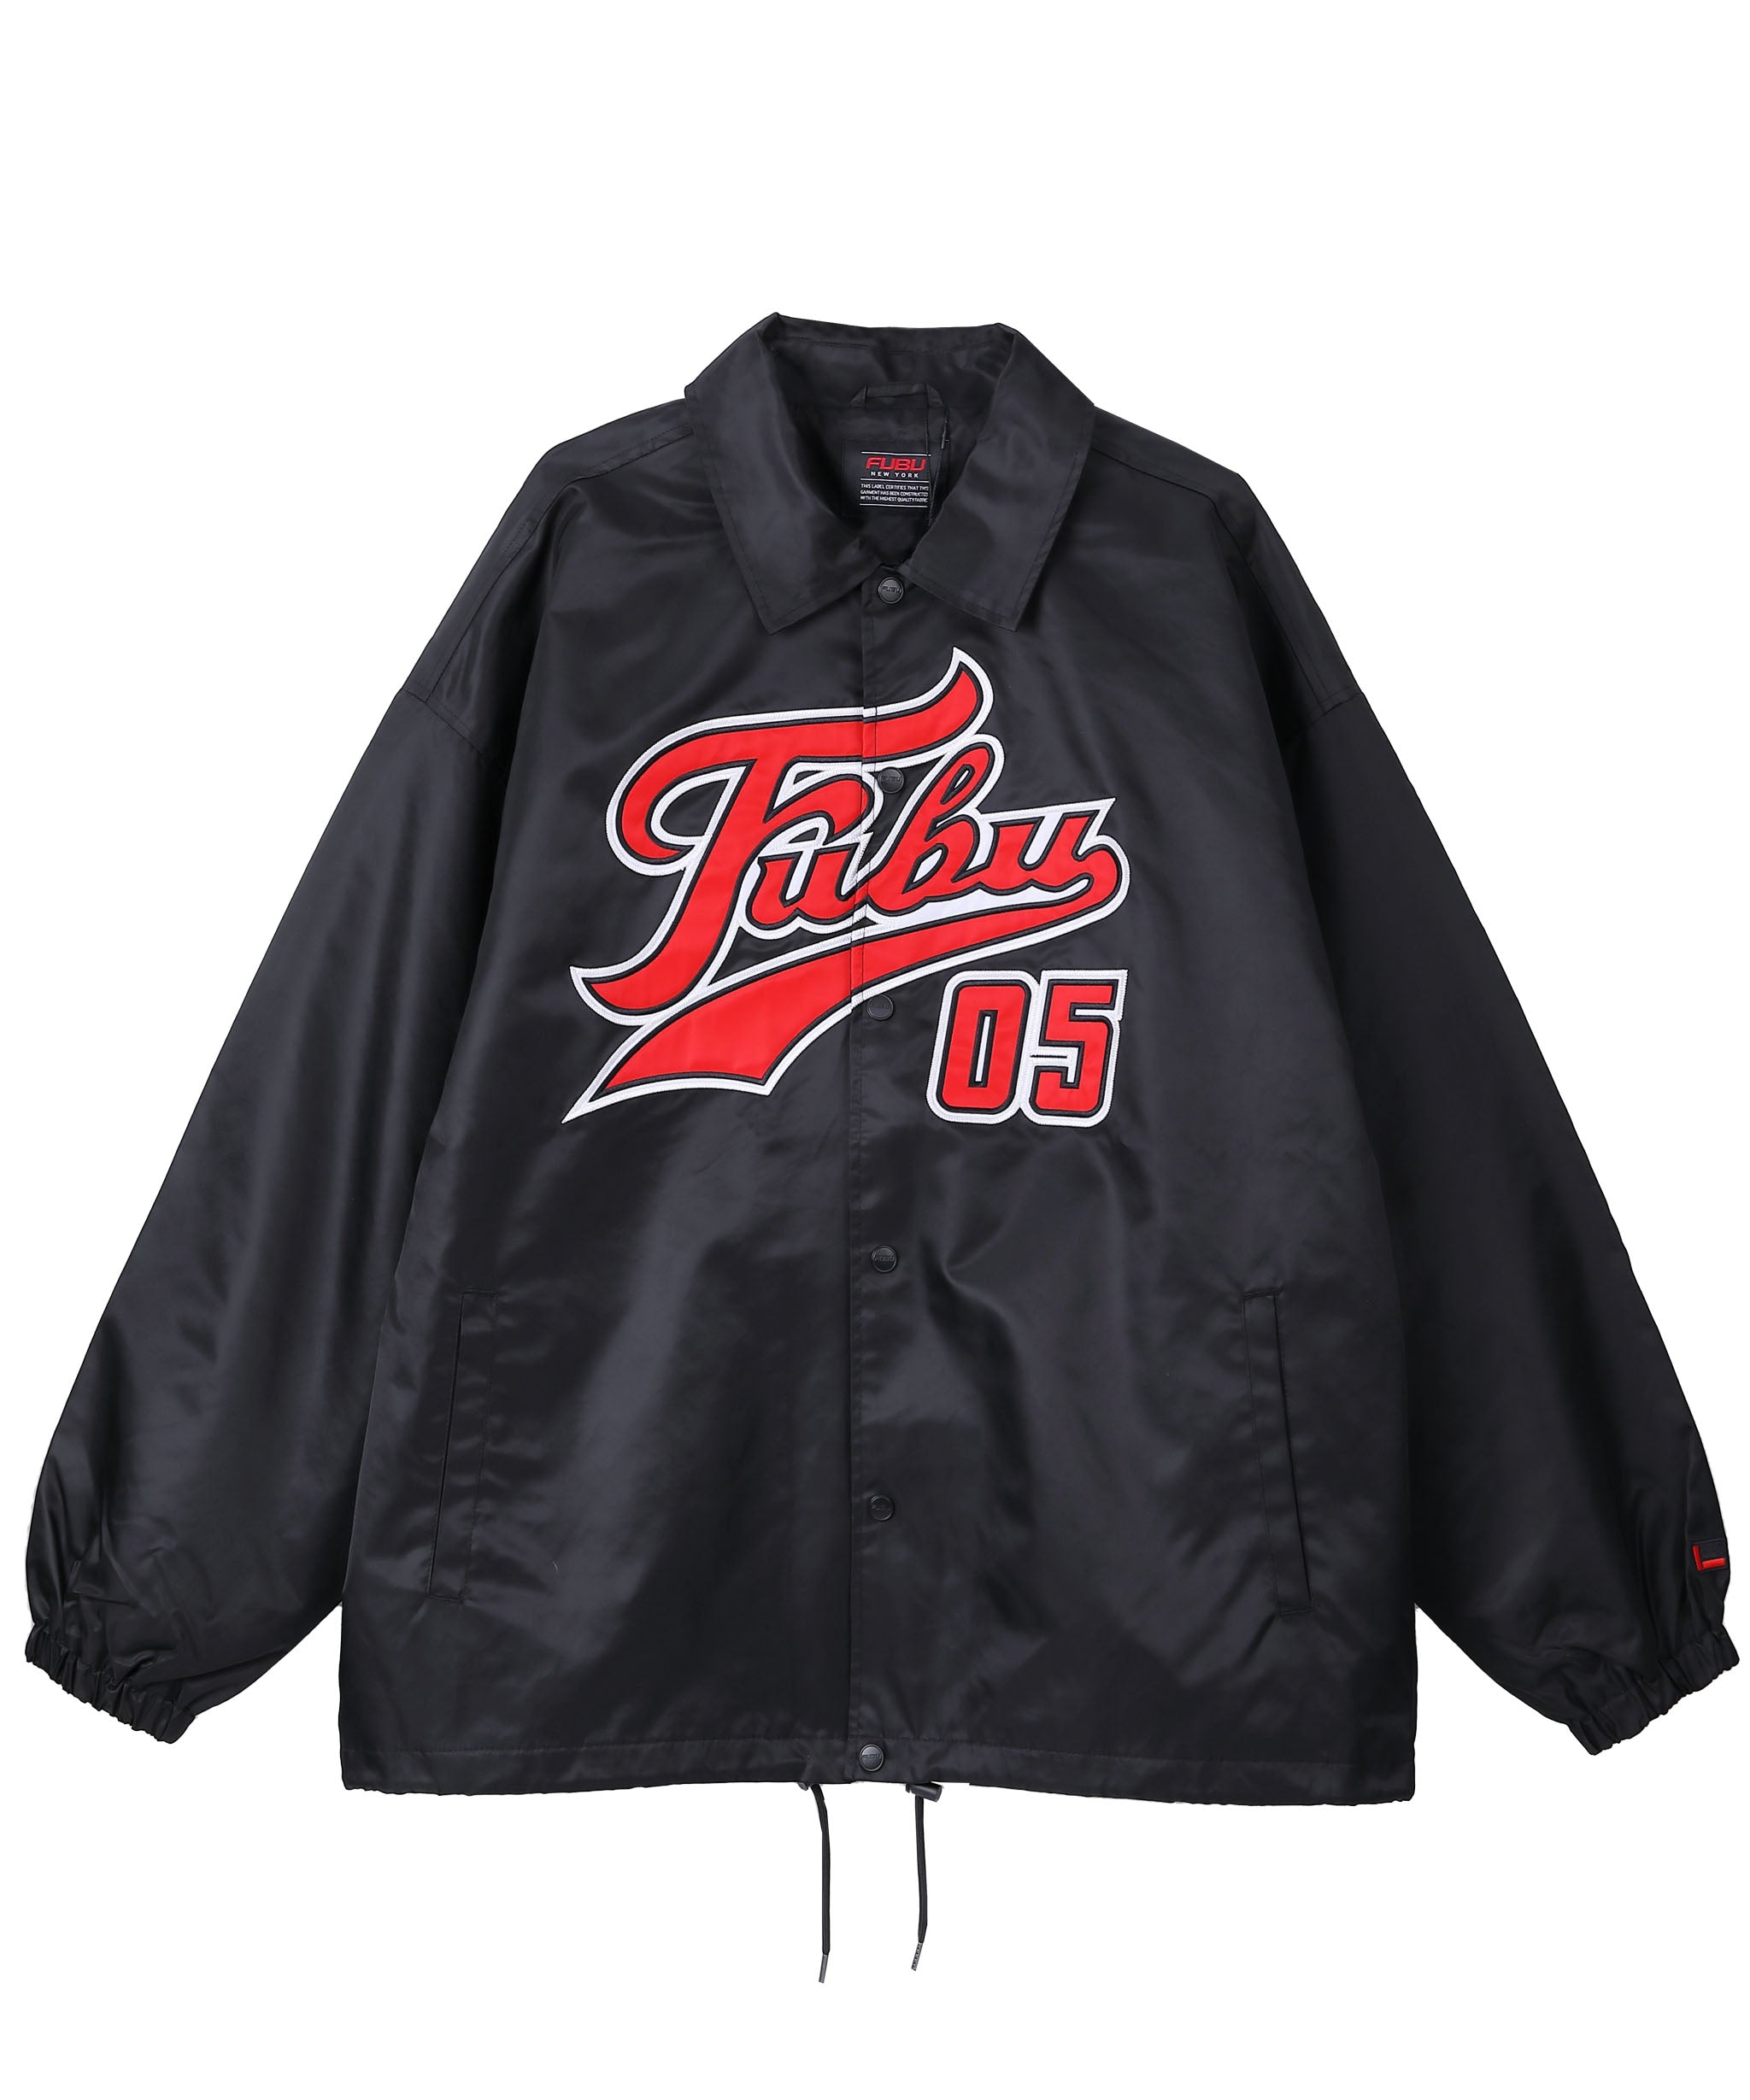 FUBU フブ ジャケット アウター コーチジャケット ロゴ ワッペン 刺繍 ナイロンジャケット 野球 ジャンパー 裏メッシュ ブルー ブラック  グリーン。FUBUはアメリカの代表的なHIPHOP FASHION BRAND（ヒップホップ ファッション ブランド）です。